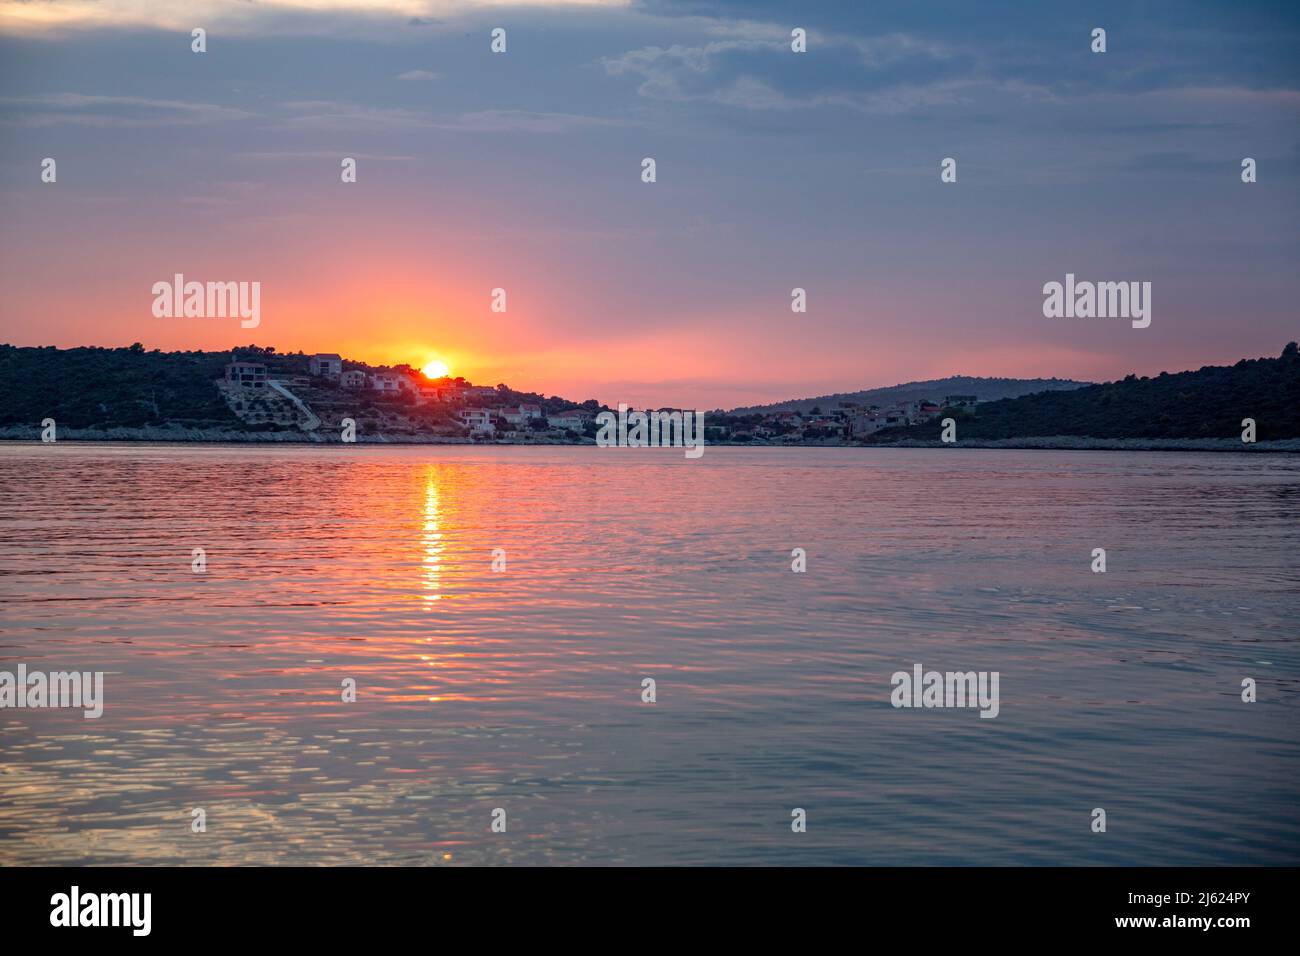 Vue panoramique sur le coucher du soleil sur la mer Adriatique Banque D'Images